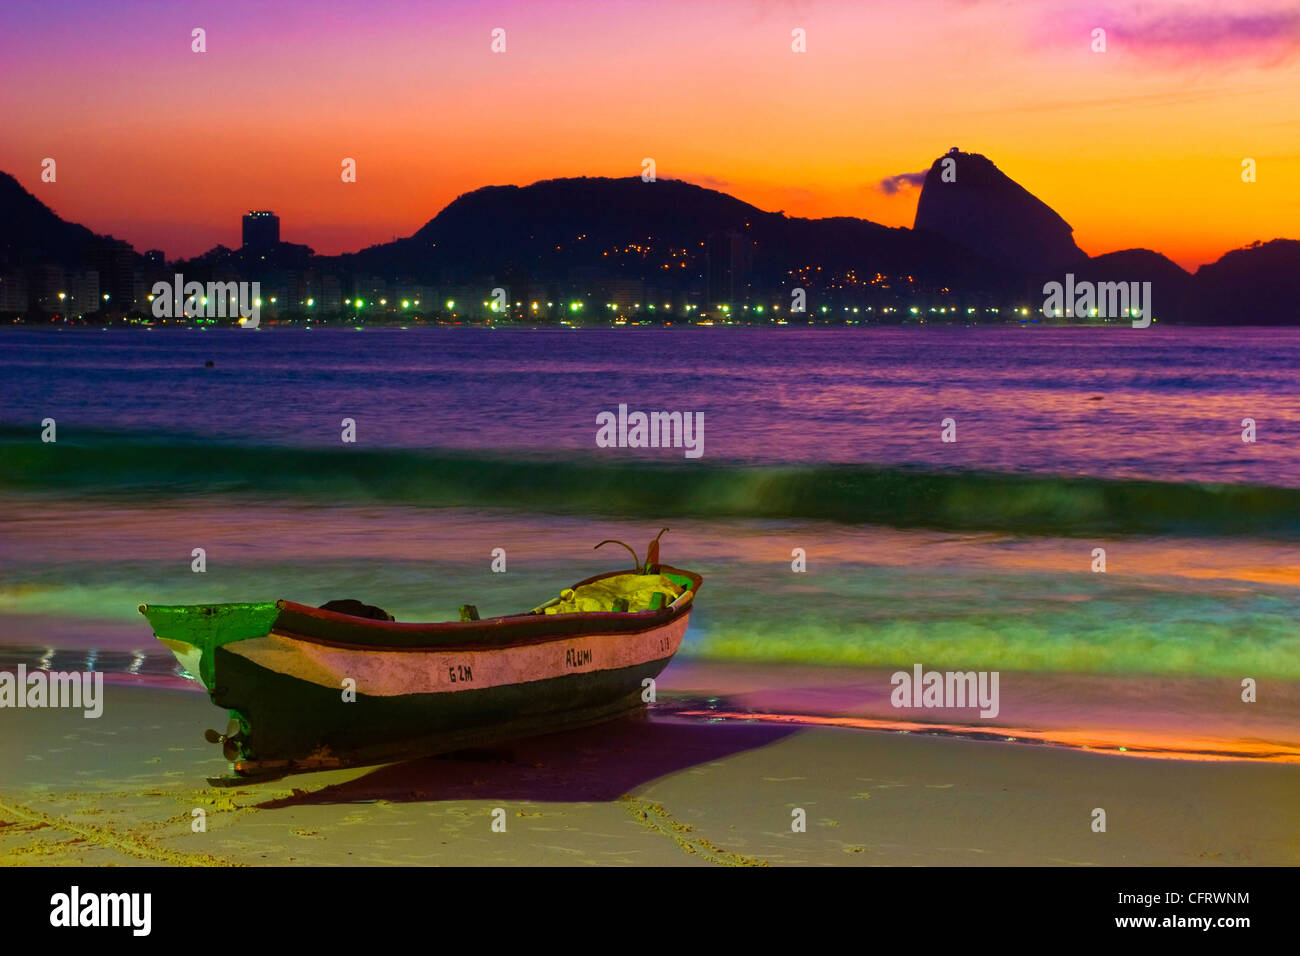 Lever du soleil sur la plage de Copacabana avec Pain de Sucre et bateau de pêche, Rio de Janeiro, Brésil. Banque D'Images